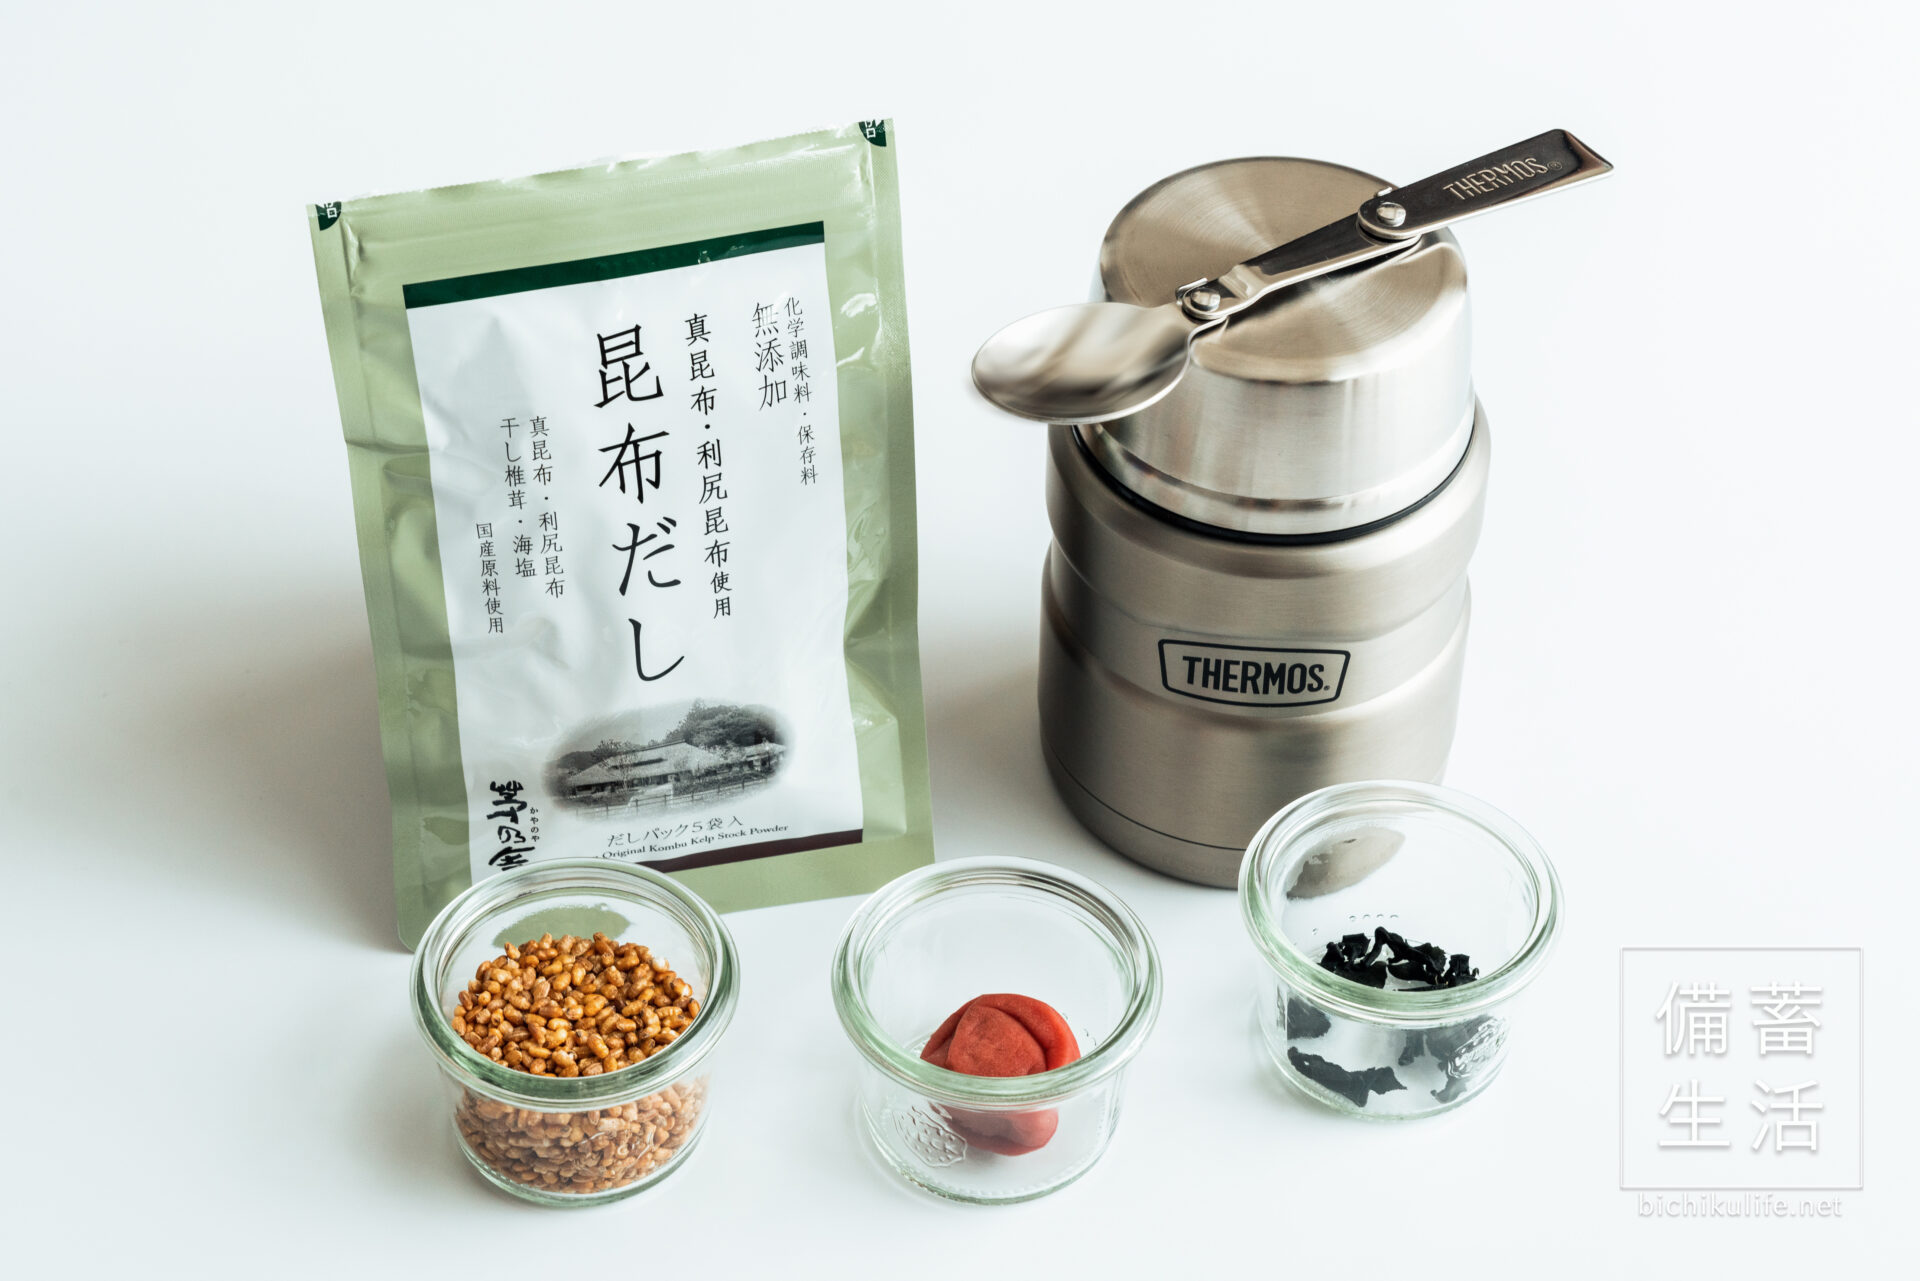 梅こんぶ炒り玄米スープご飯のレシピ、材料